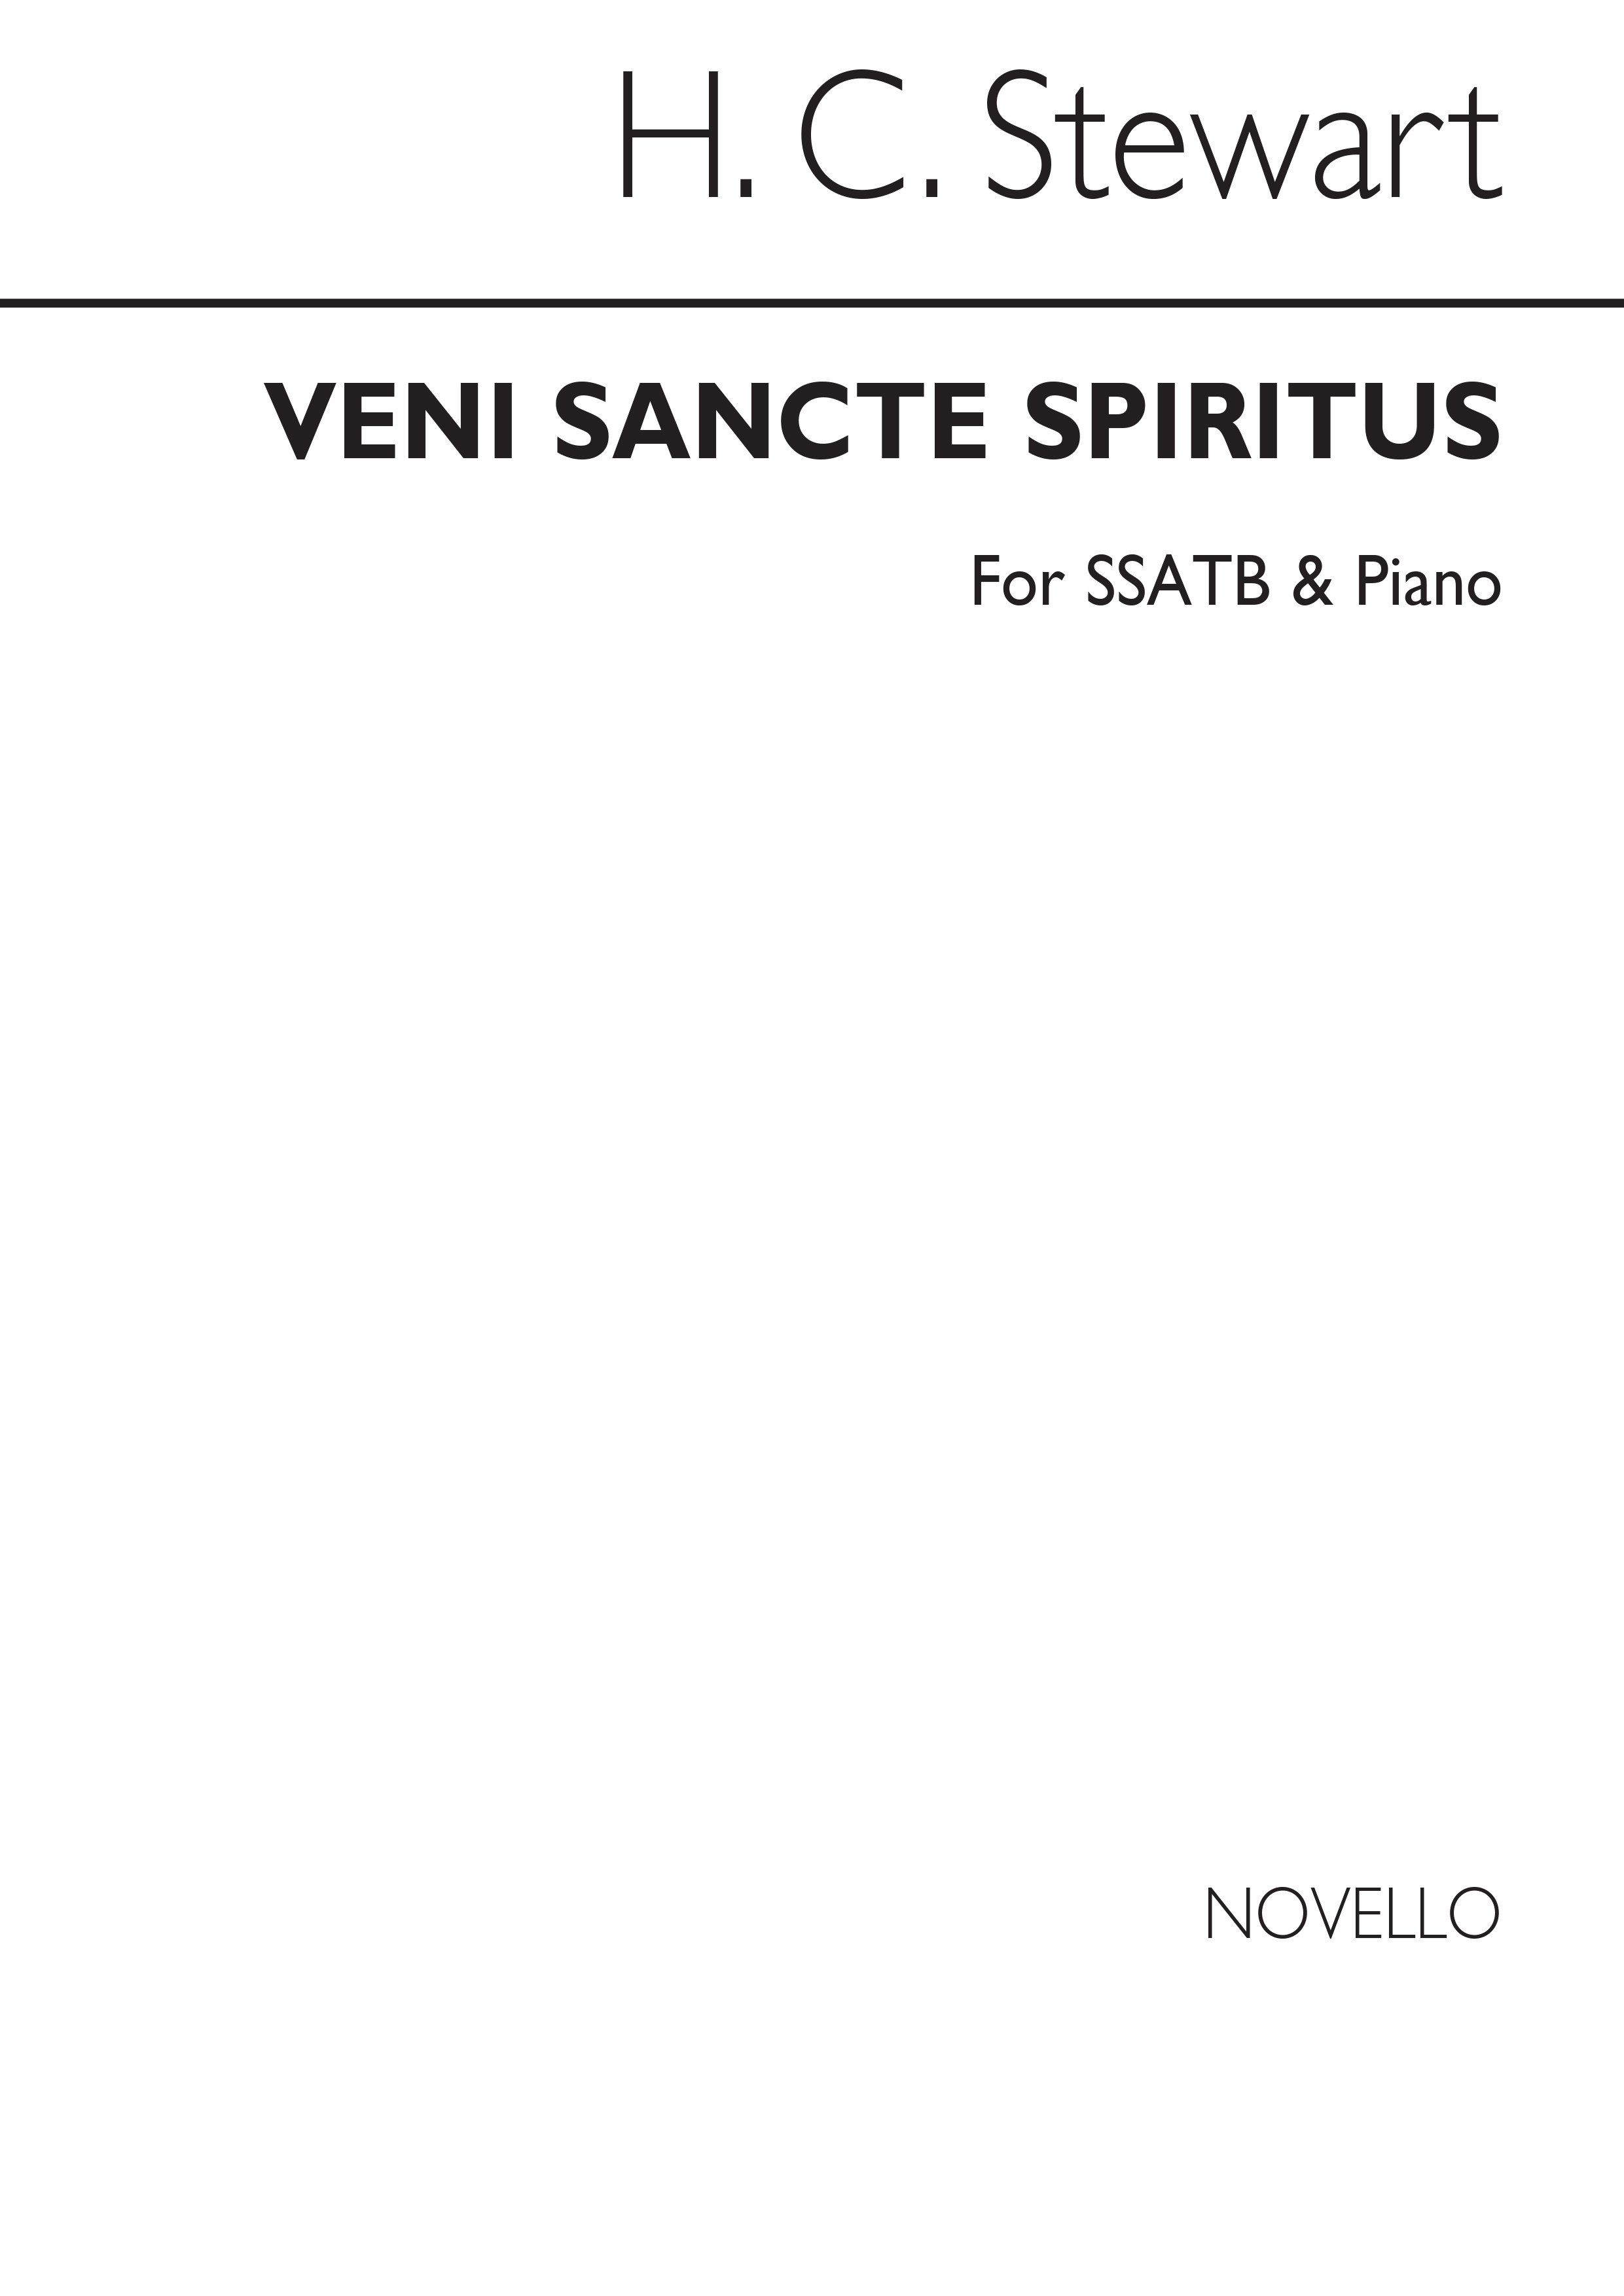 H.C. Stewart: Veni Sancte Spiritus: SATB: Vocal Score